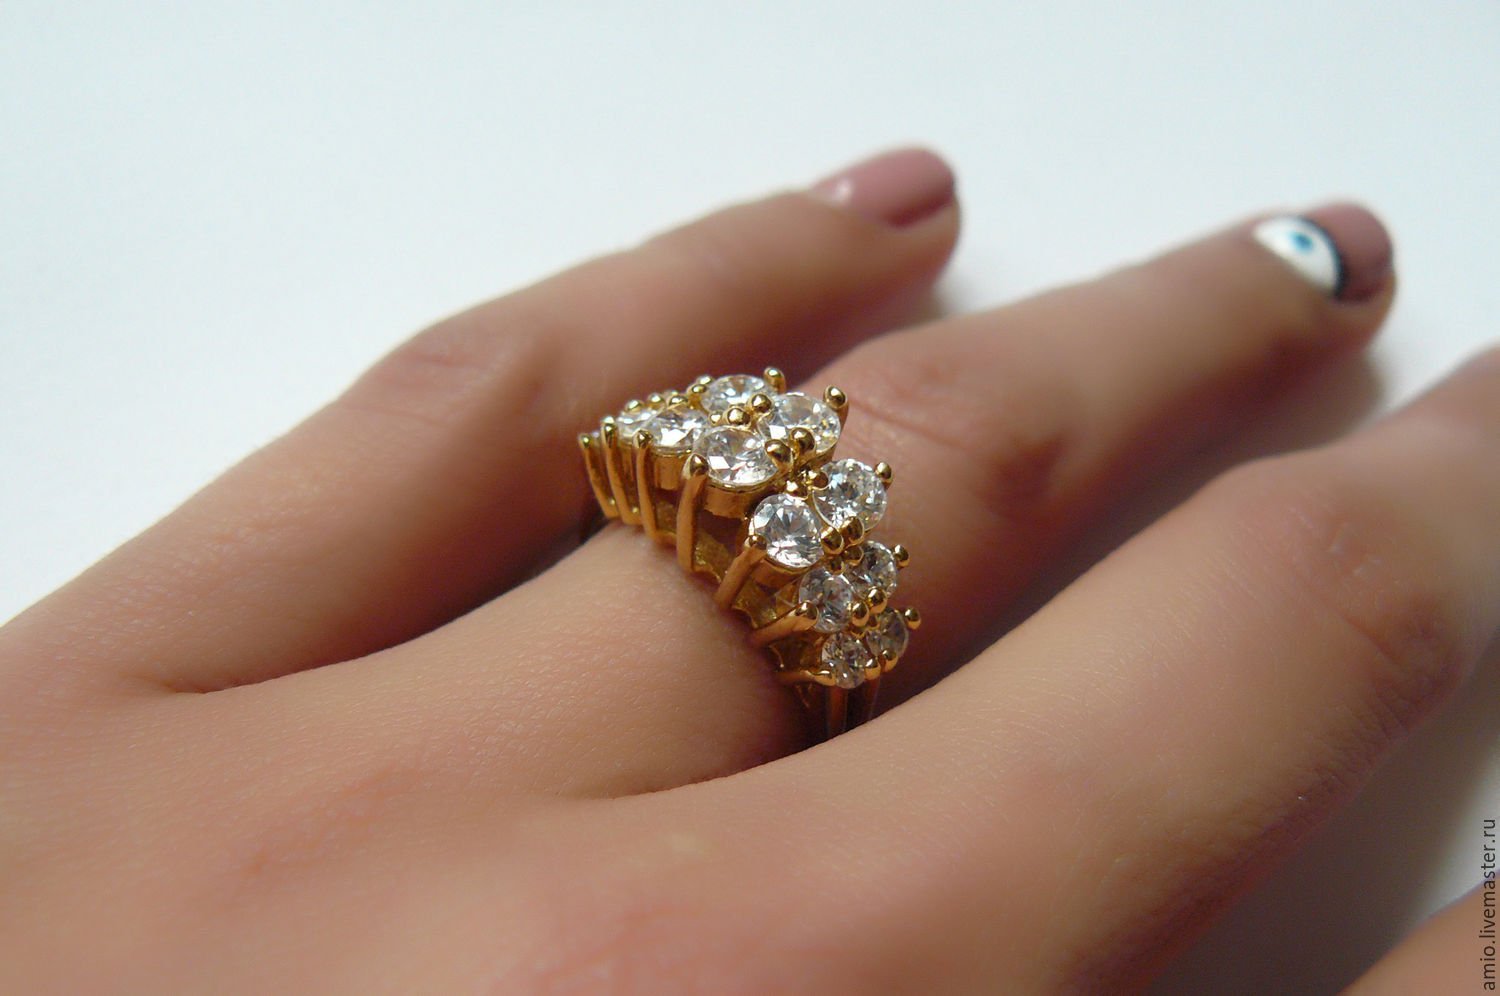 Надеты кольца золотые. Красивые кольца. Красивые женские кольца. Кольцо золотое на руке. Кольца с камнями женские.